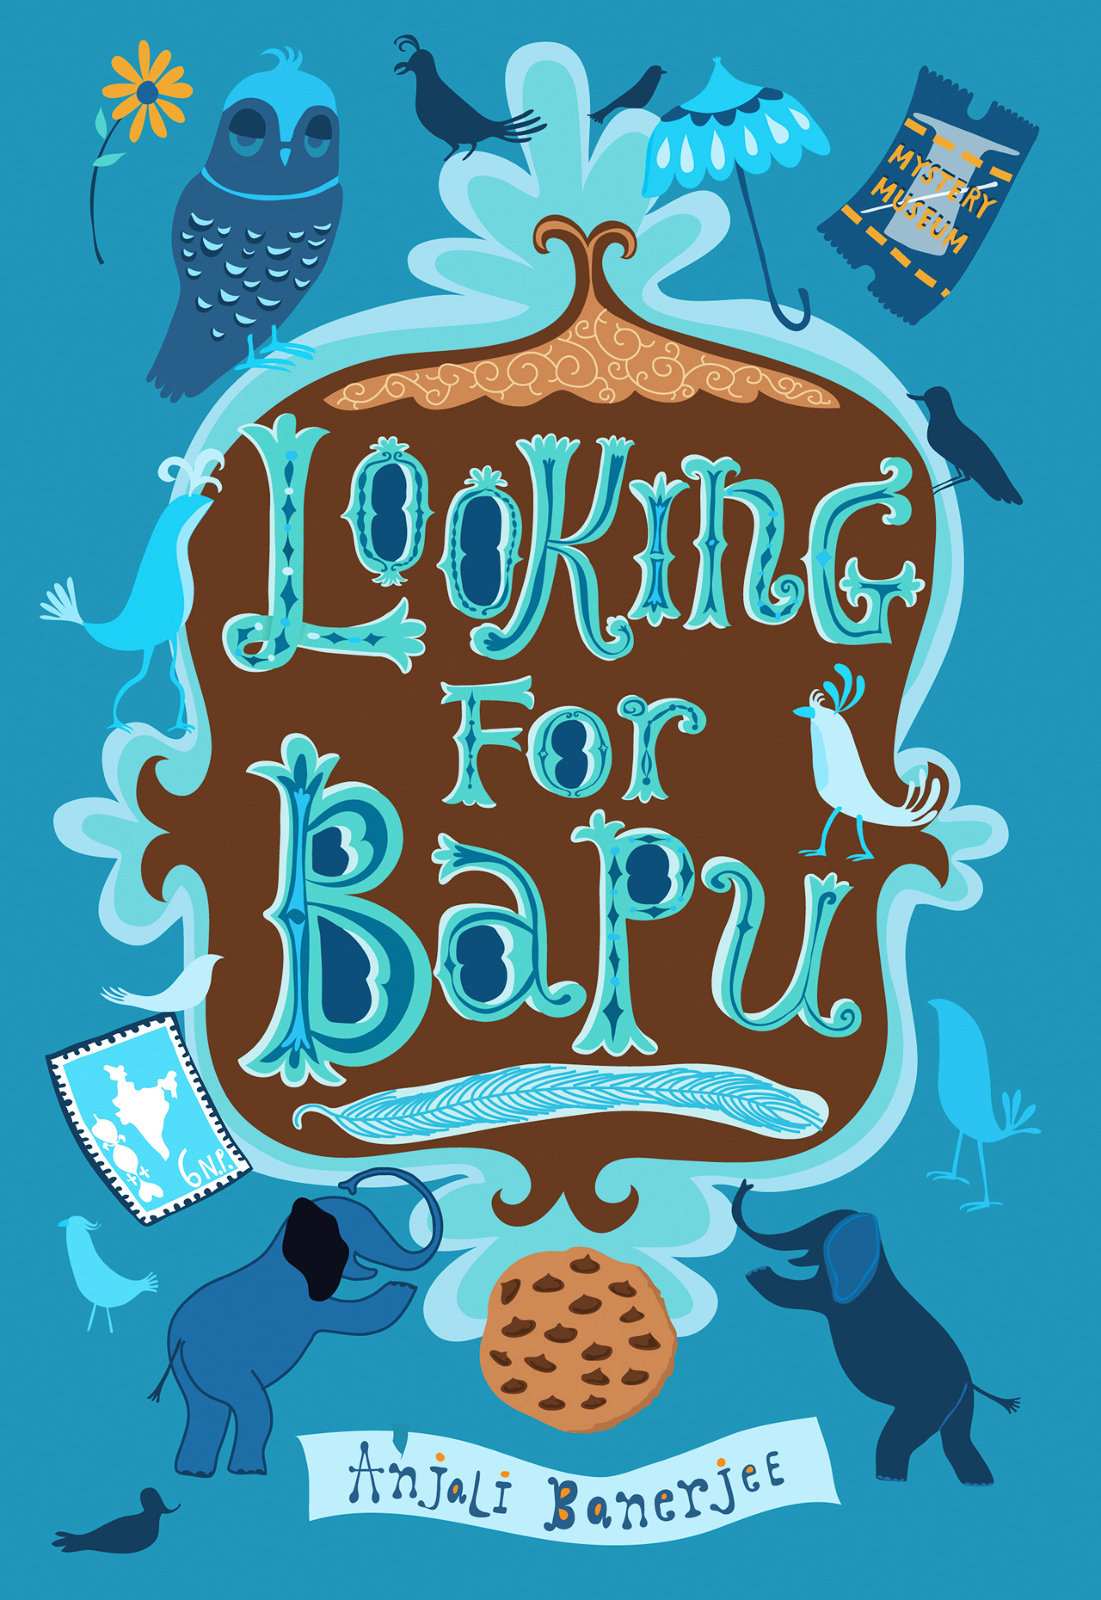 Looking for Bapu